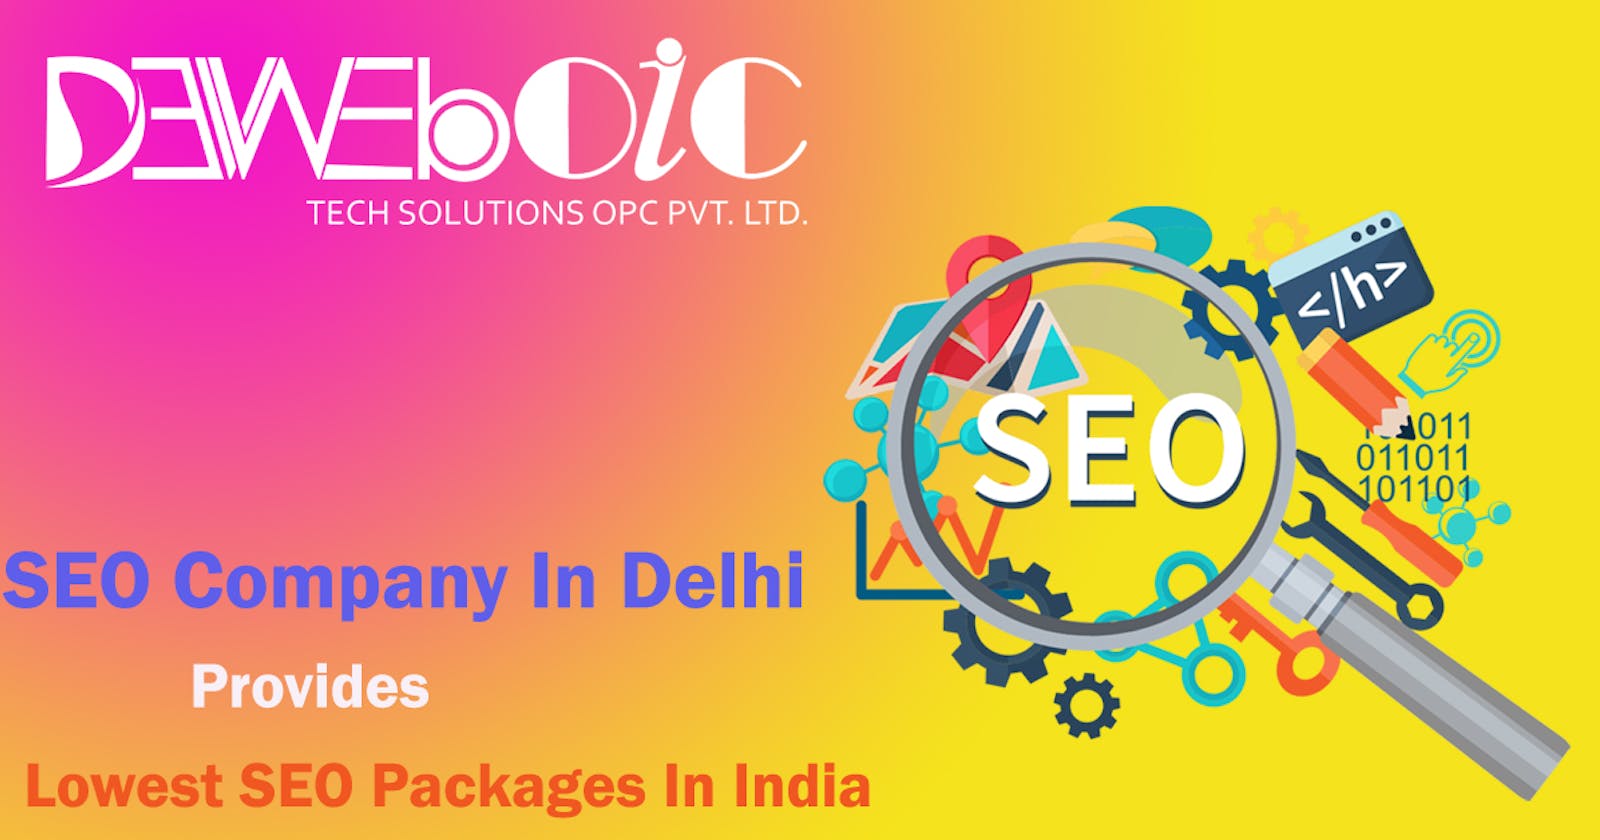 The foremost SEO company in Delhi